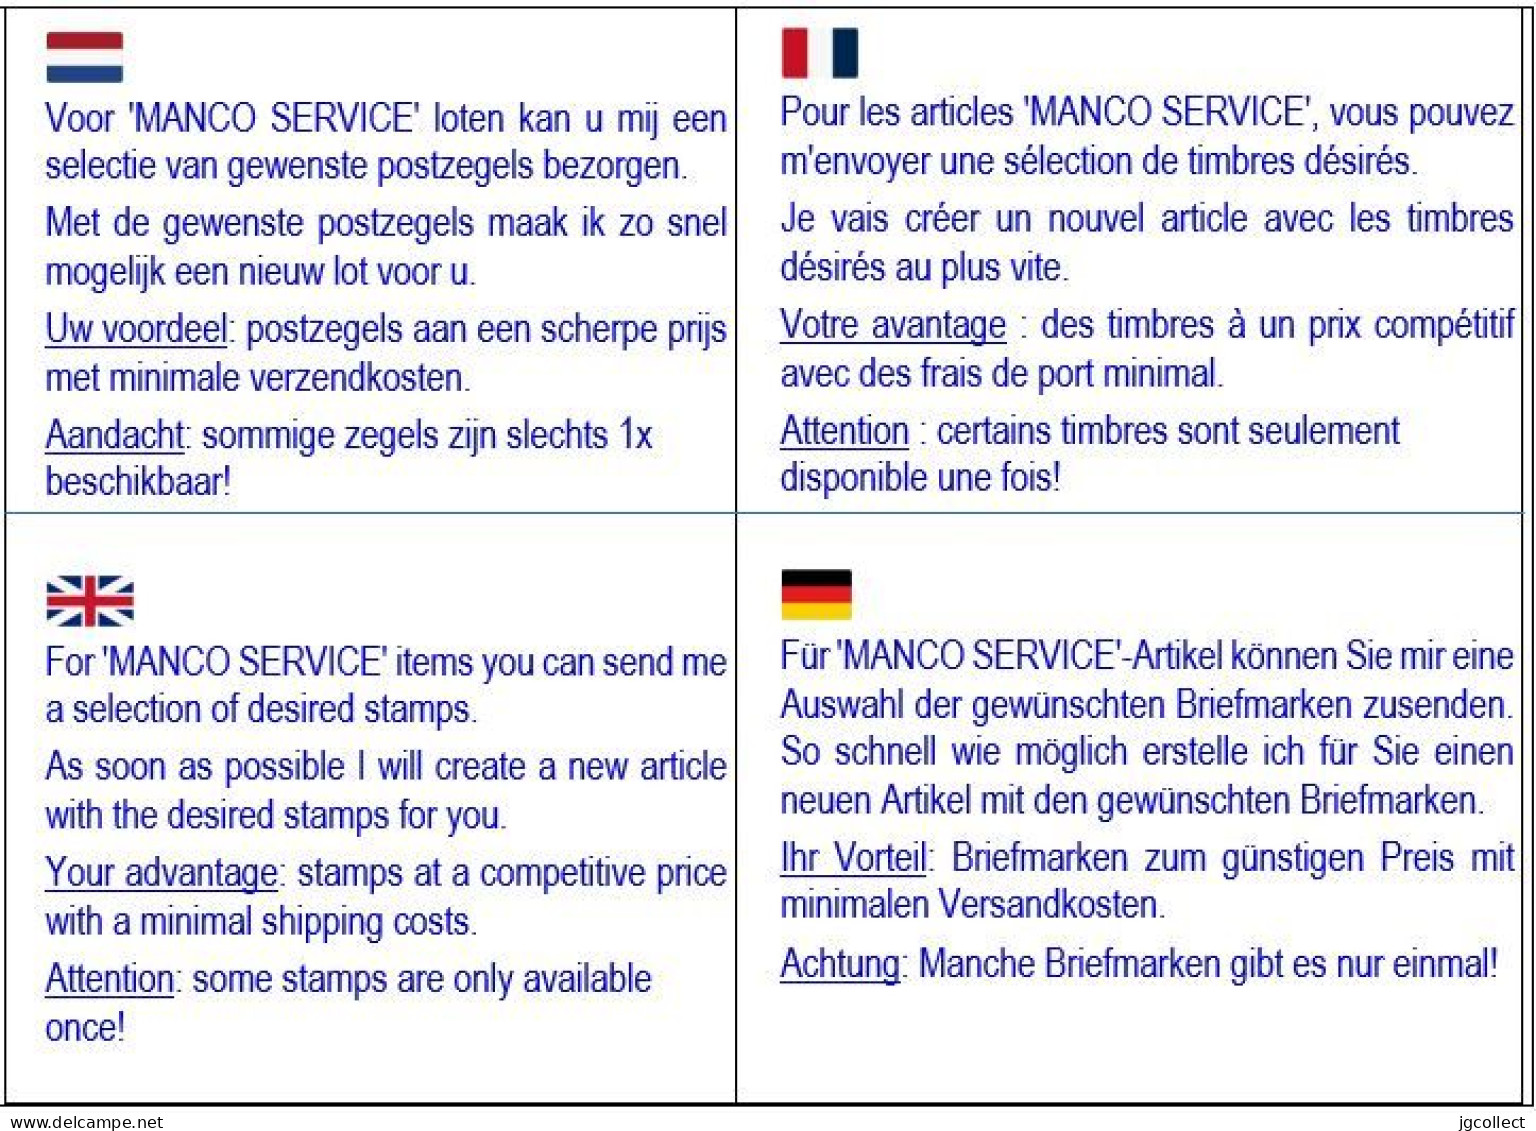 MANCO Service: Typografisch 1906-12 Wapenschild - Typos 1906-12 (Wappen)